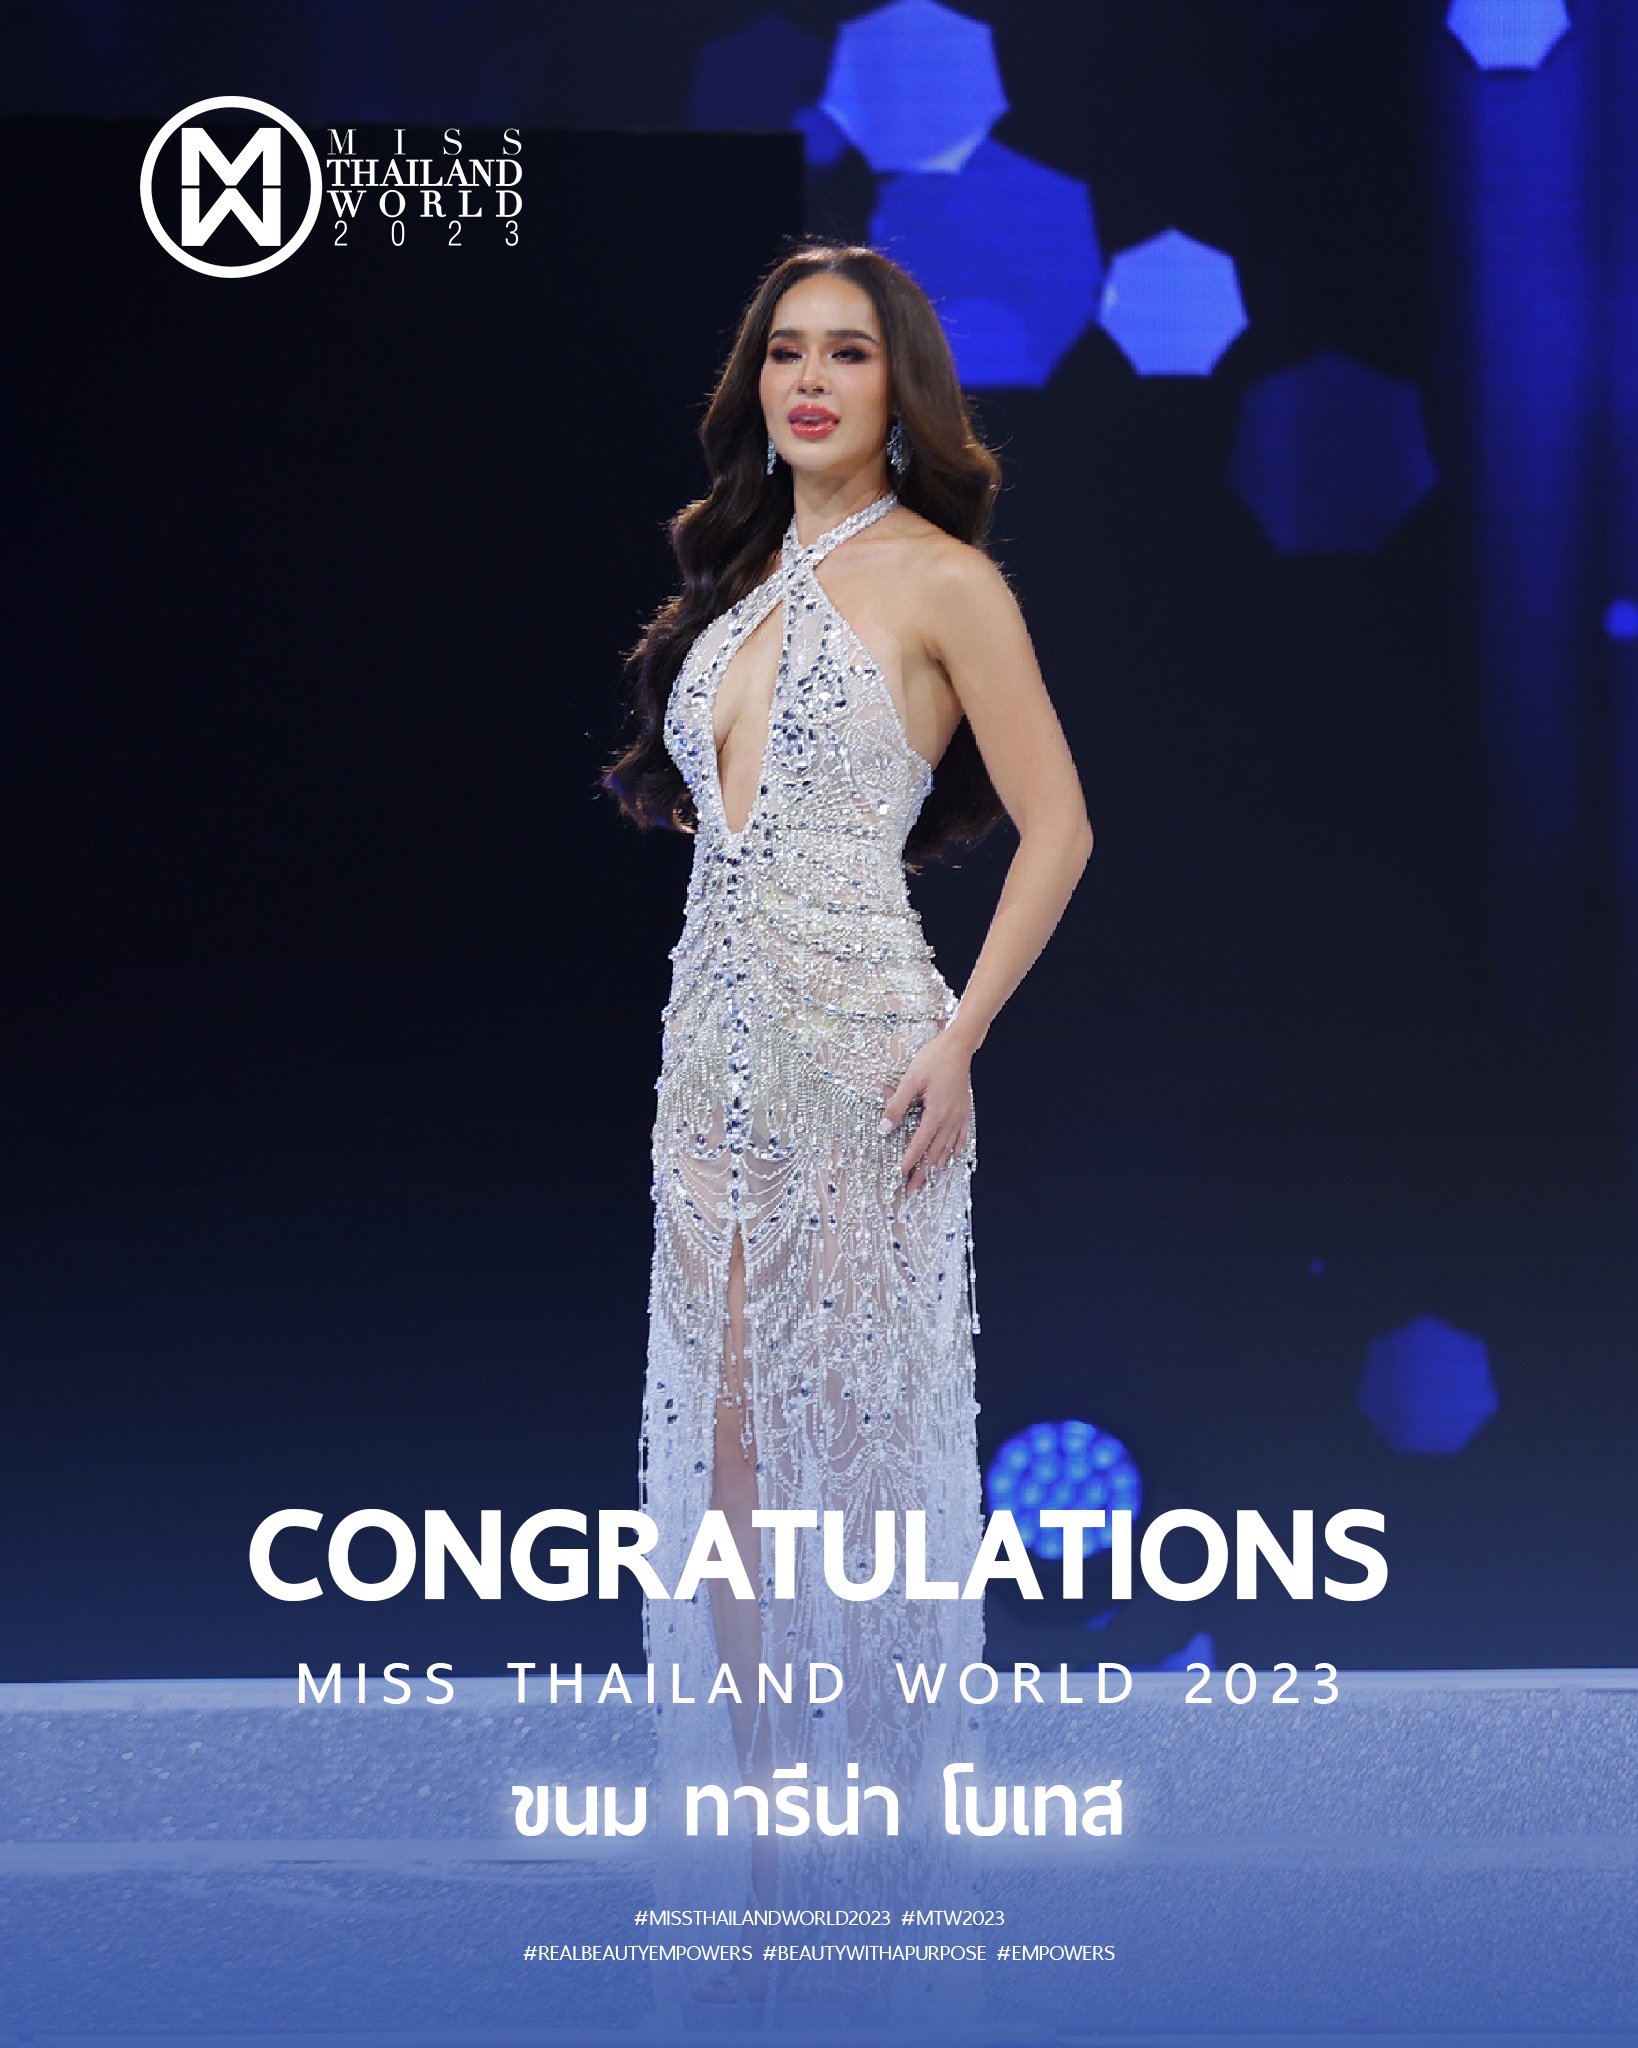 Miss Thailand World 2023